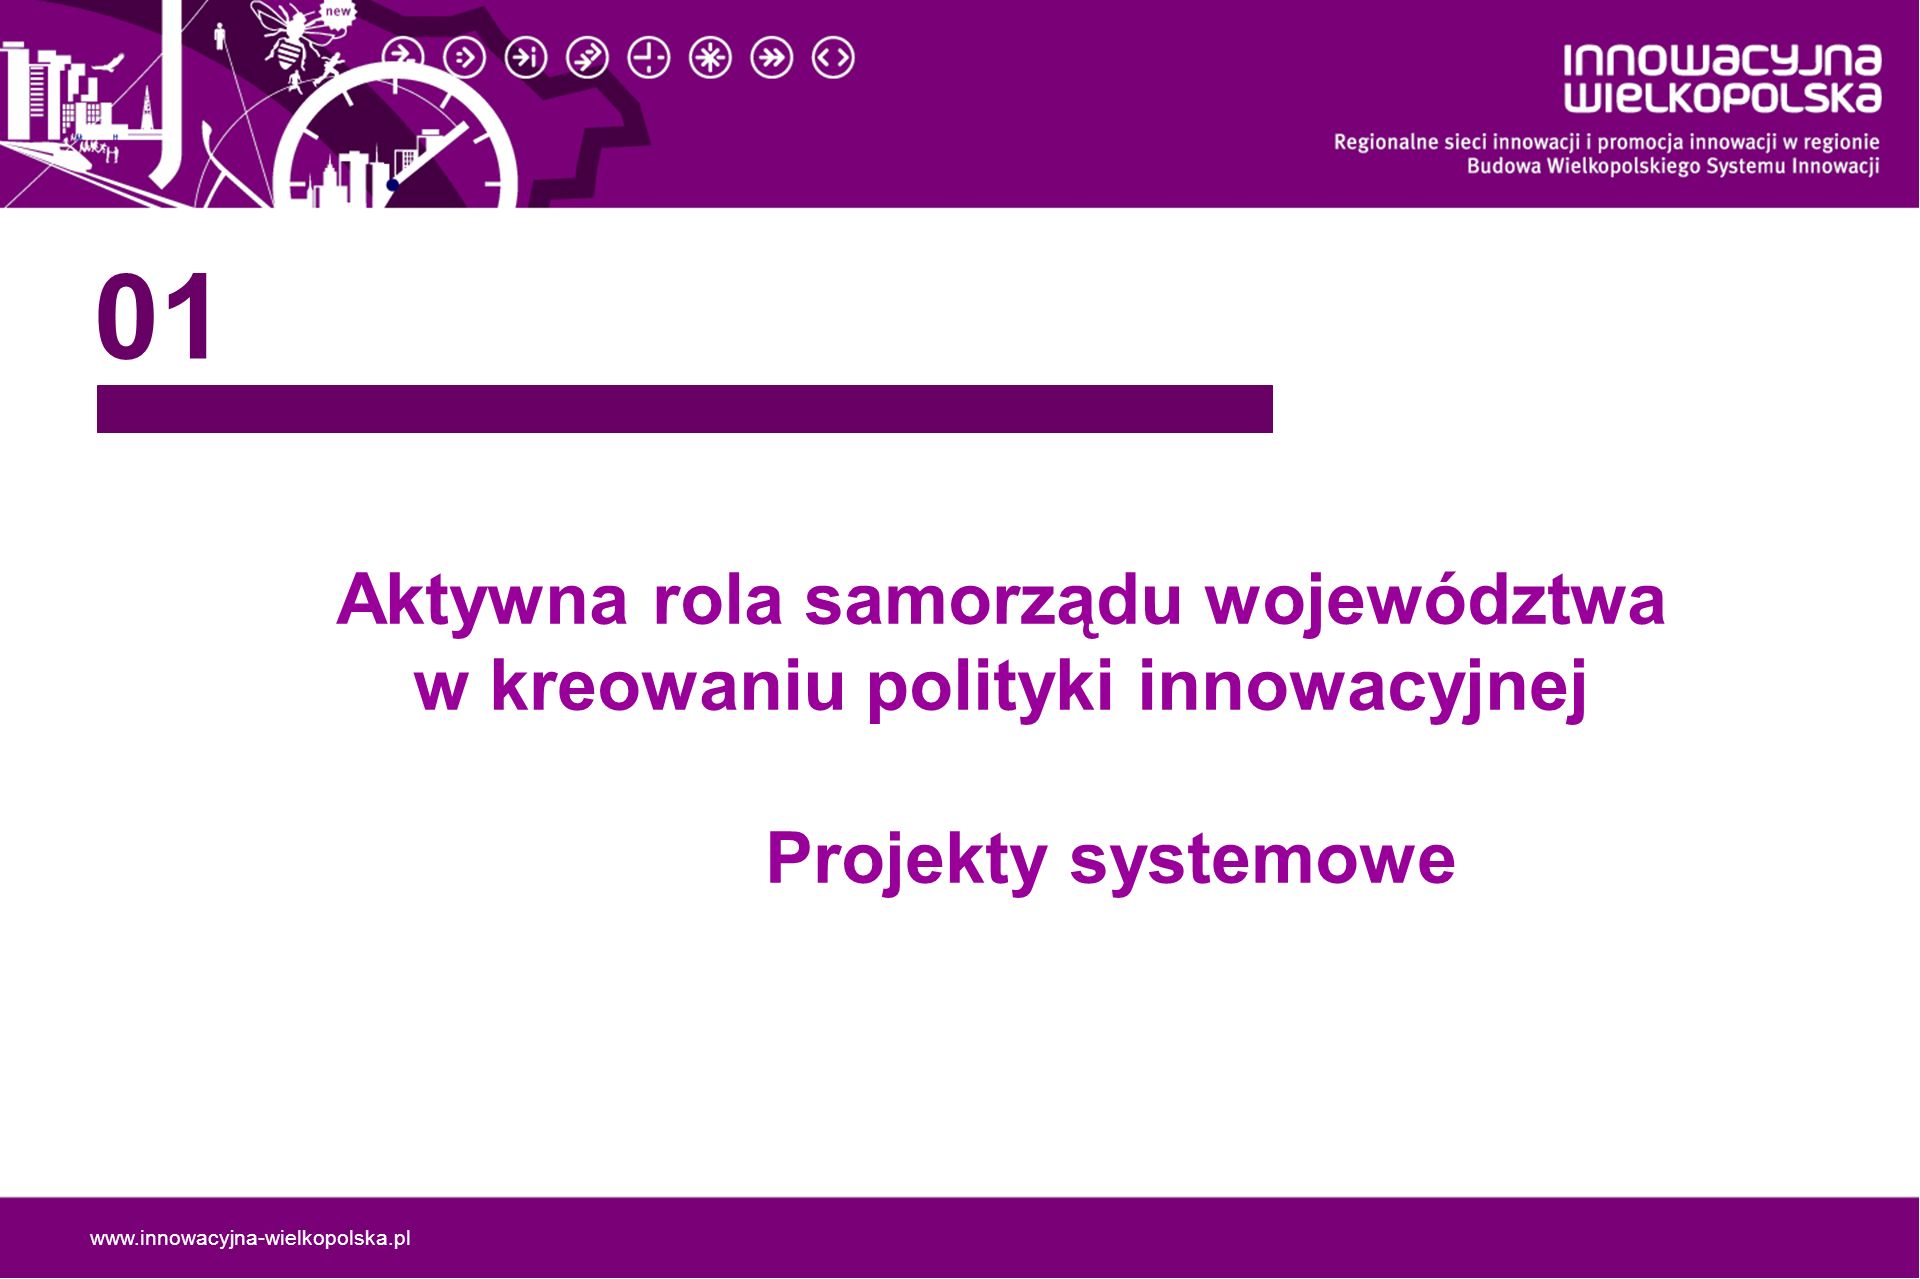 Aktywna rola samorządu województwa w kreowaniu polityki innowacyjnej